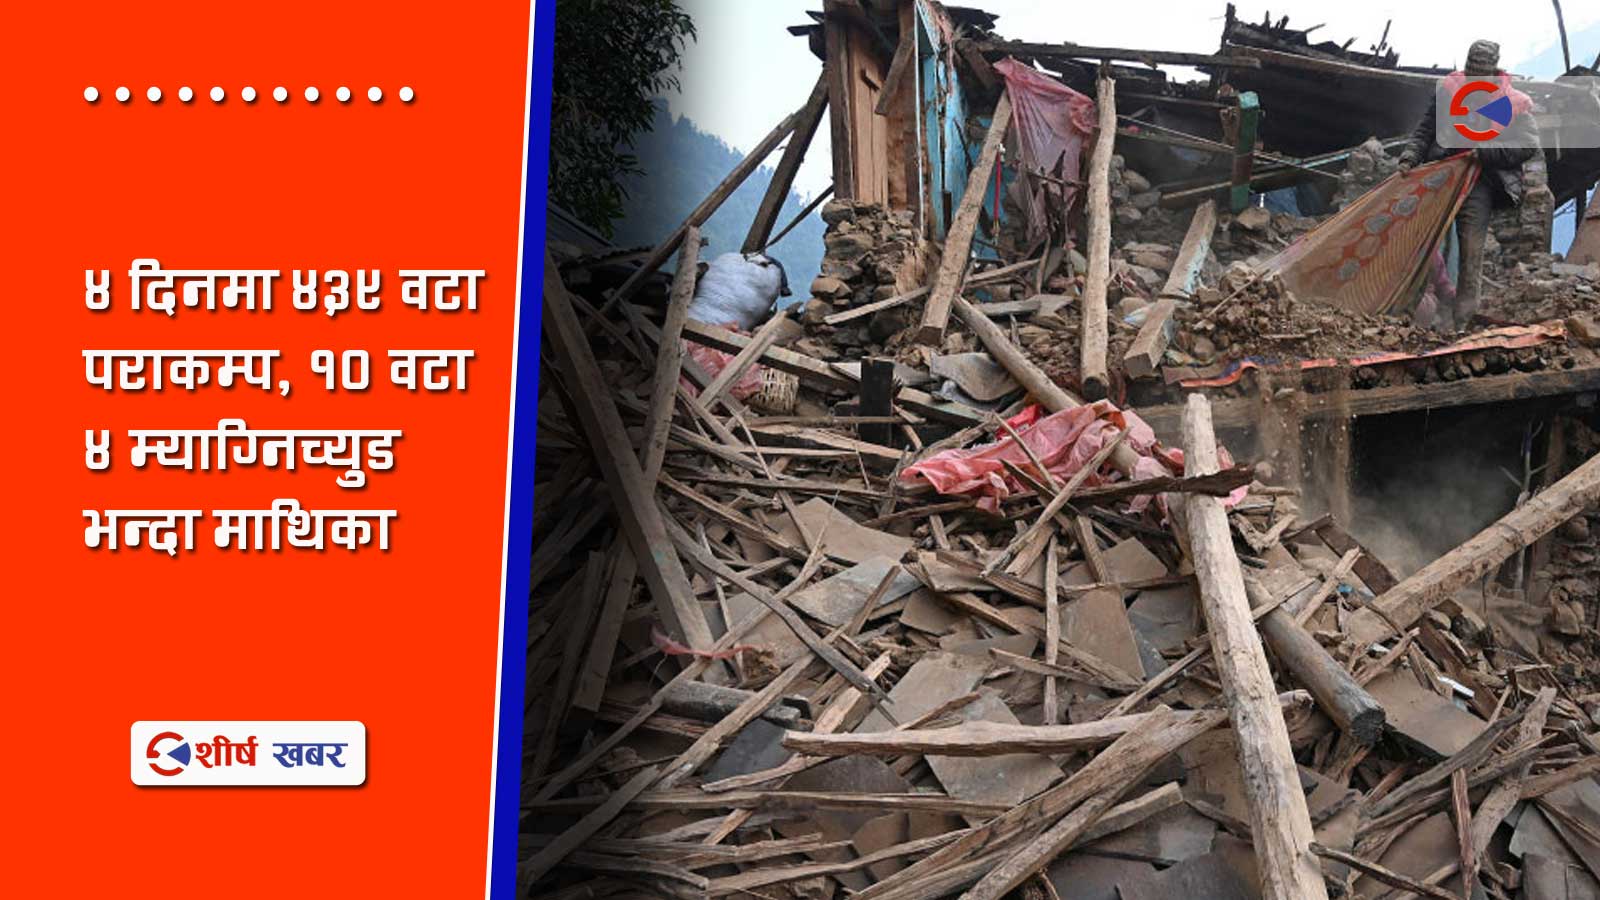 पश्चिम नेपालमा ५१८ वर्षदेखि भूकम्पिय इनर्जी सञ्चित, टरेको छैन महाभूकम्पको जोखिम